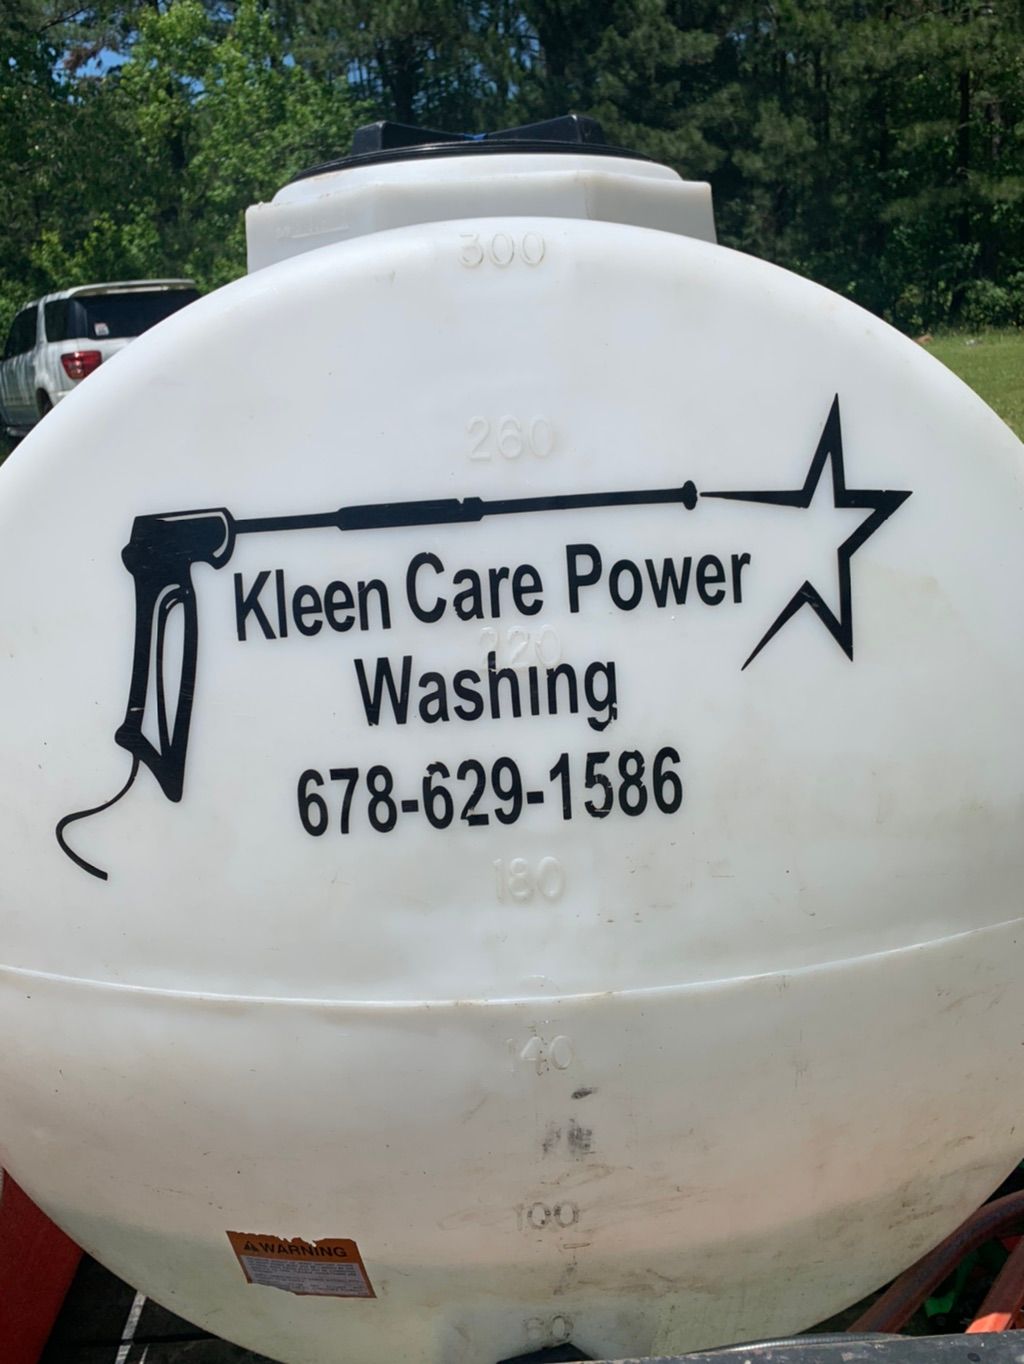 Kleen Care Power Washing